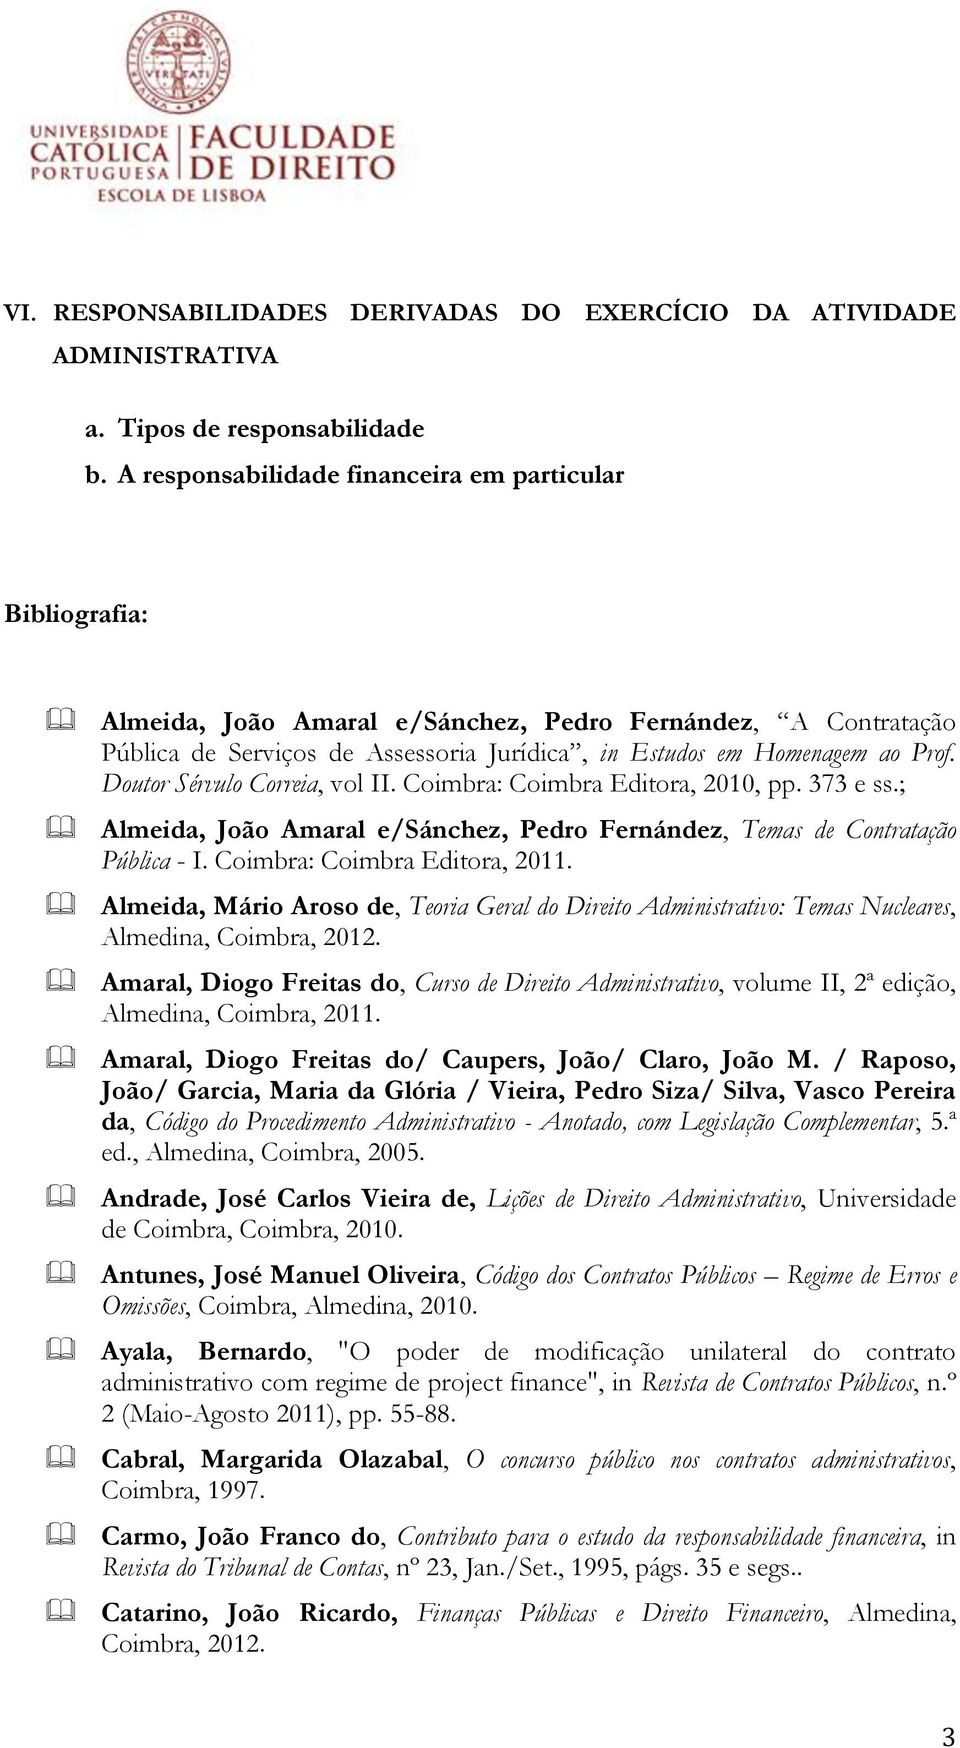 Doutor Sérvulo Correia, vol II. Coimbra: Coimbra Editora, 2010, pp. 373 e ss.; Almeida, João Amaral e/sánchez, Pedro Fernández, Temas de Contratação Pública - I. Coimbra: Coimbra Editora, 2011.